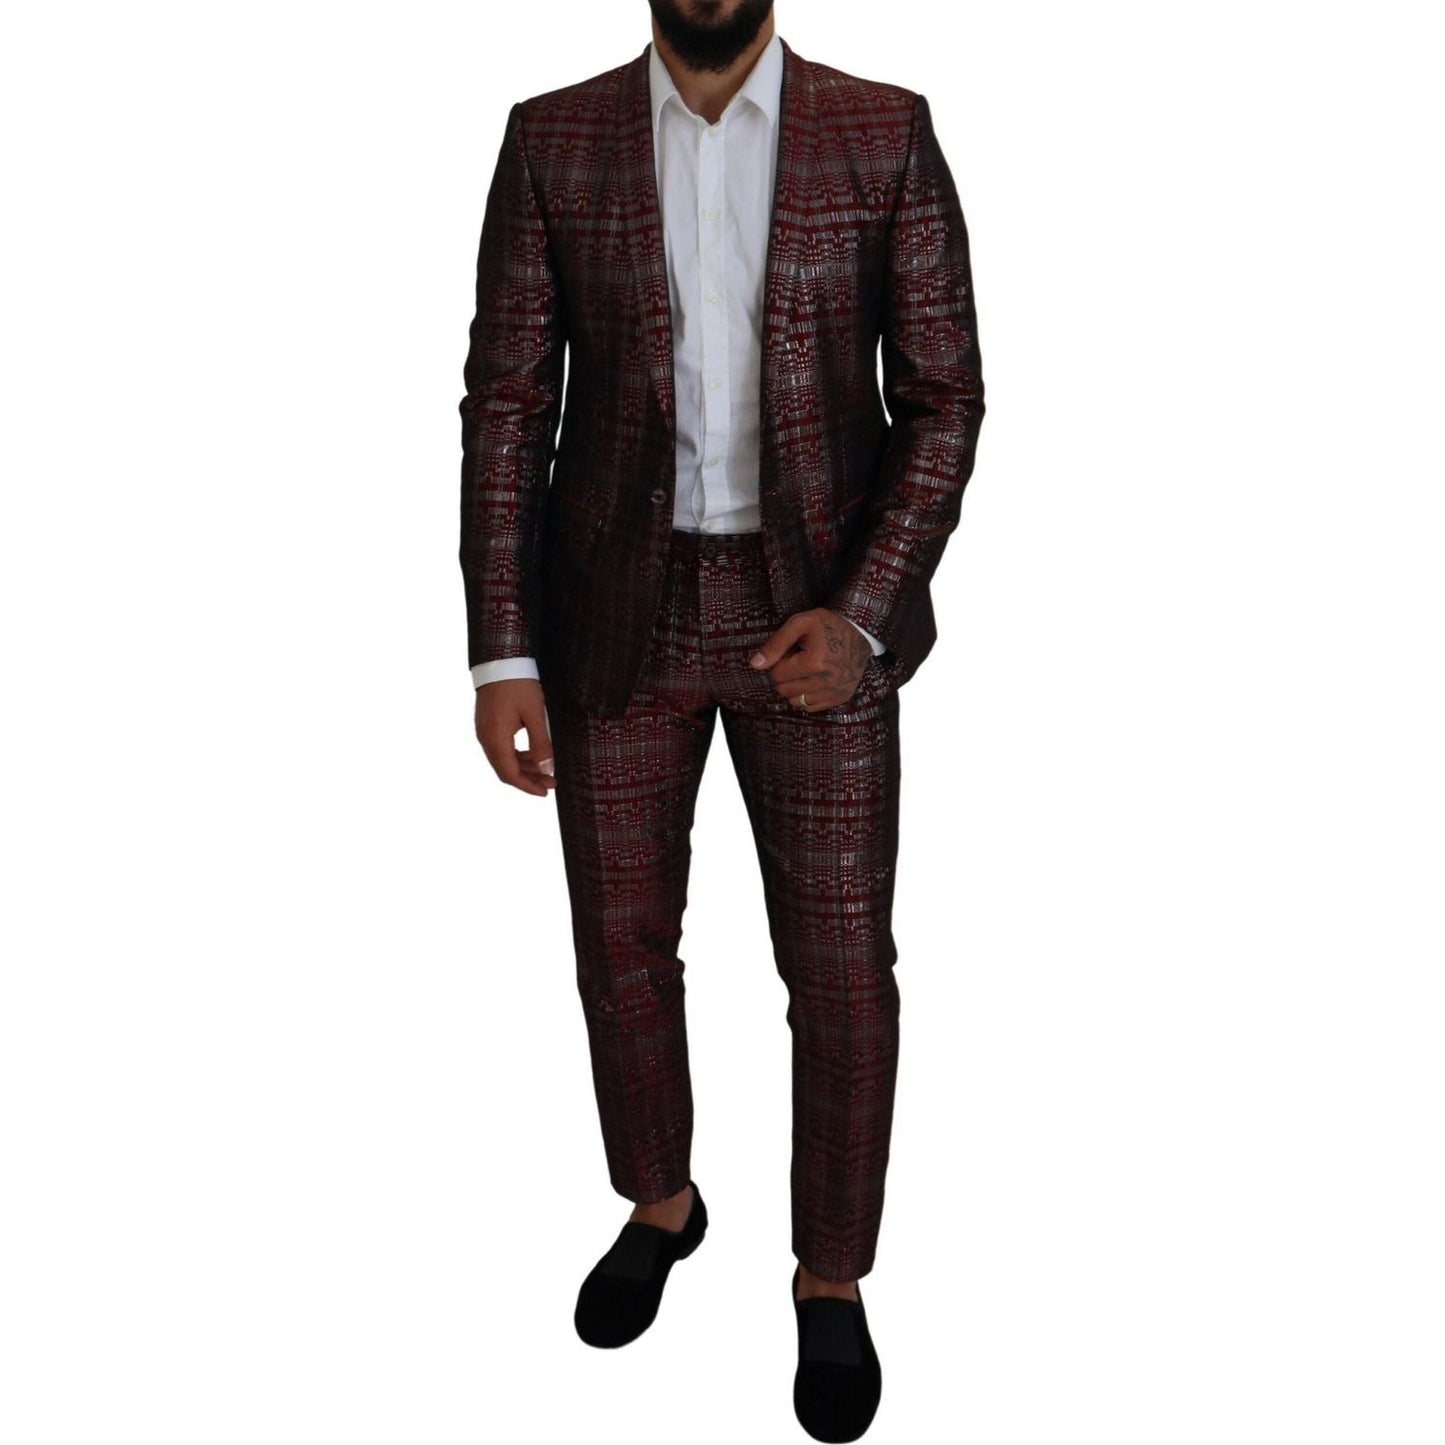 Dolce & Gabbana Bordeaux Fantasy Slim Fit Two-Piece Suit bordeaux-silver-gold-slim-fit-suit IMG_8791-scaled-3e1e968f-034.jpg